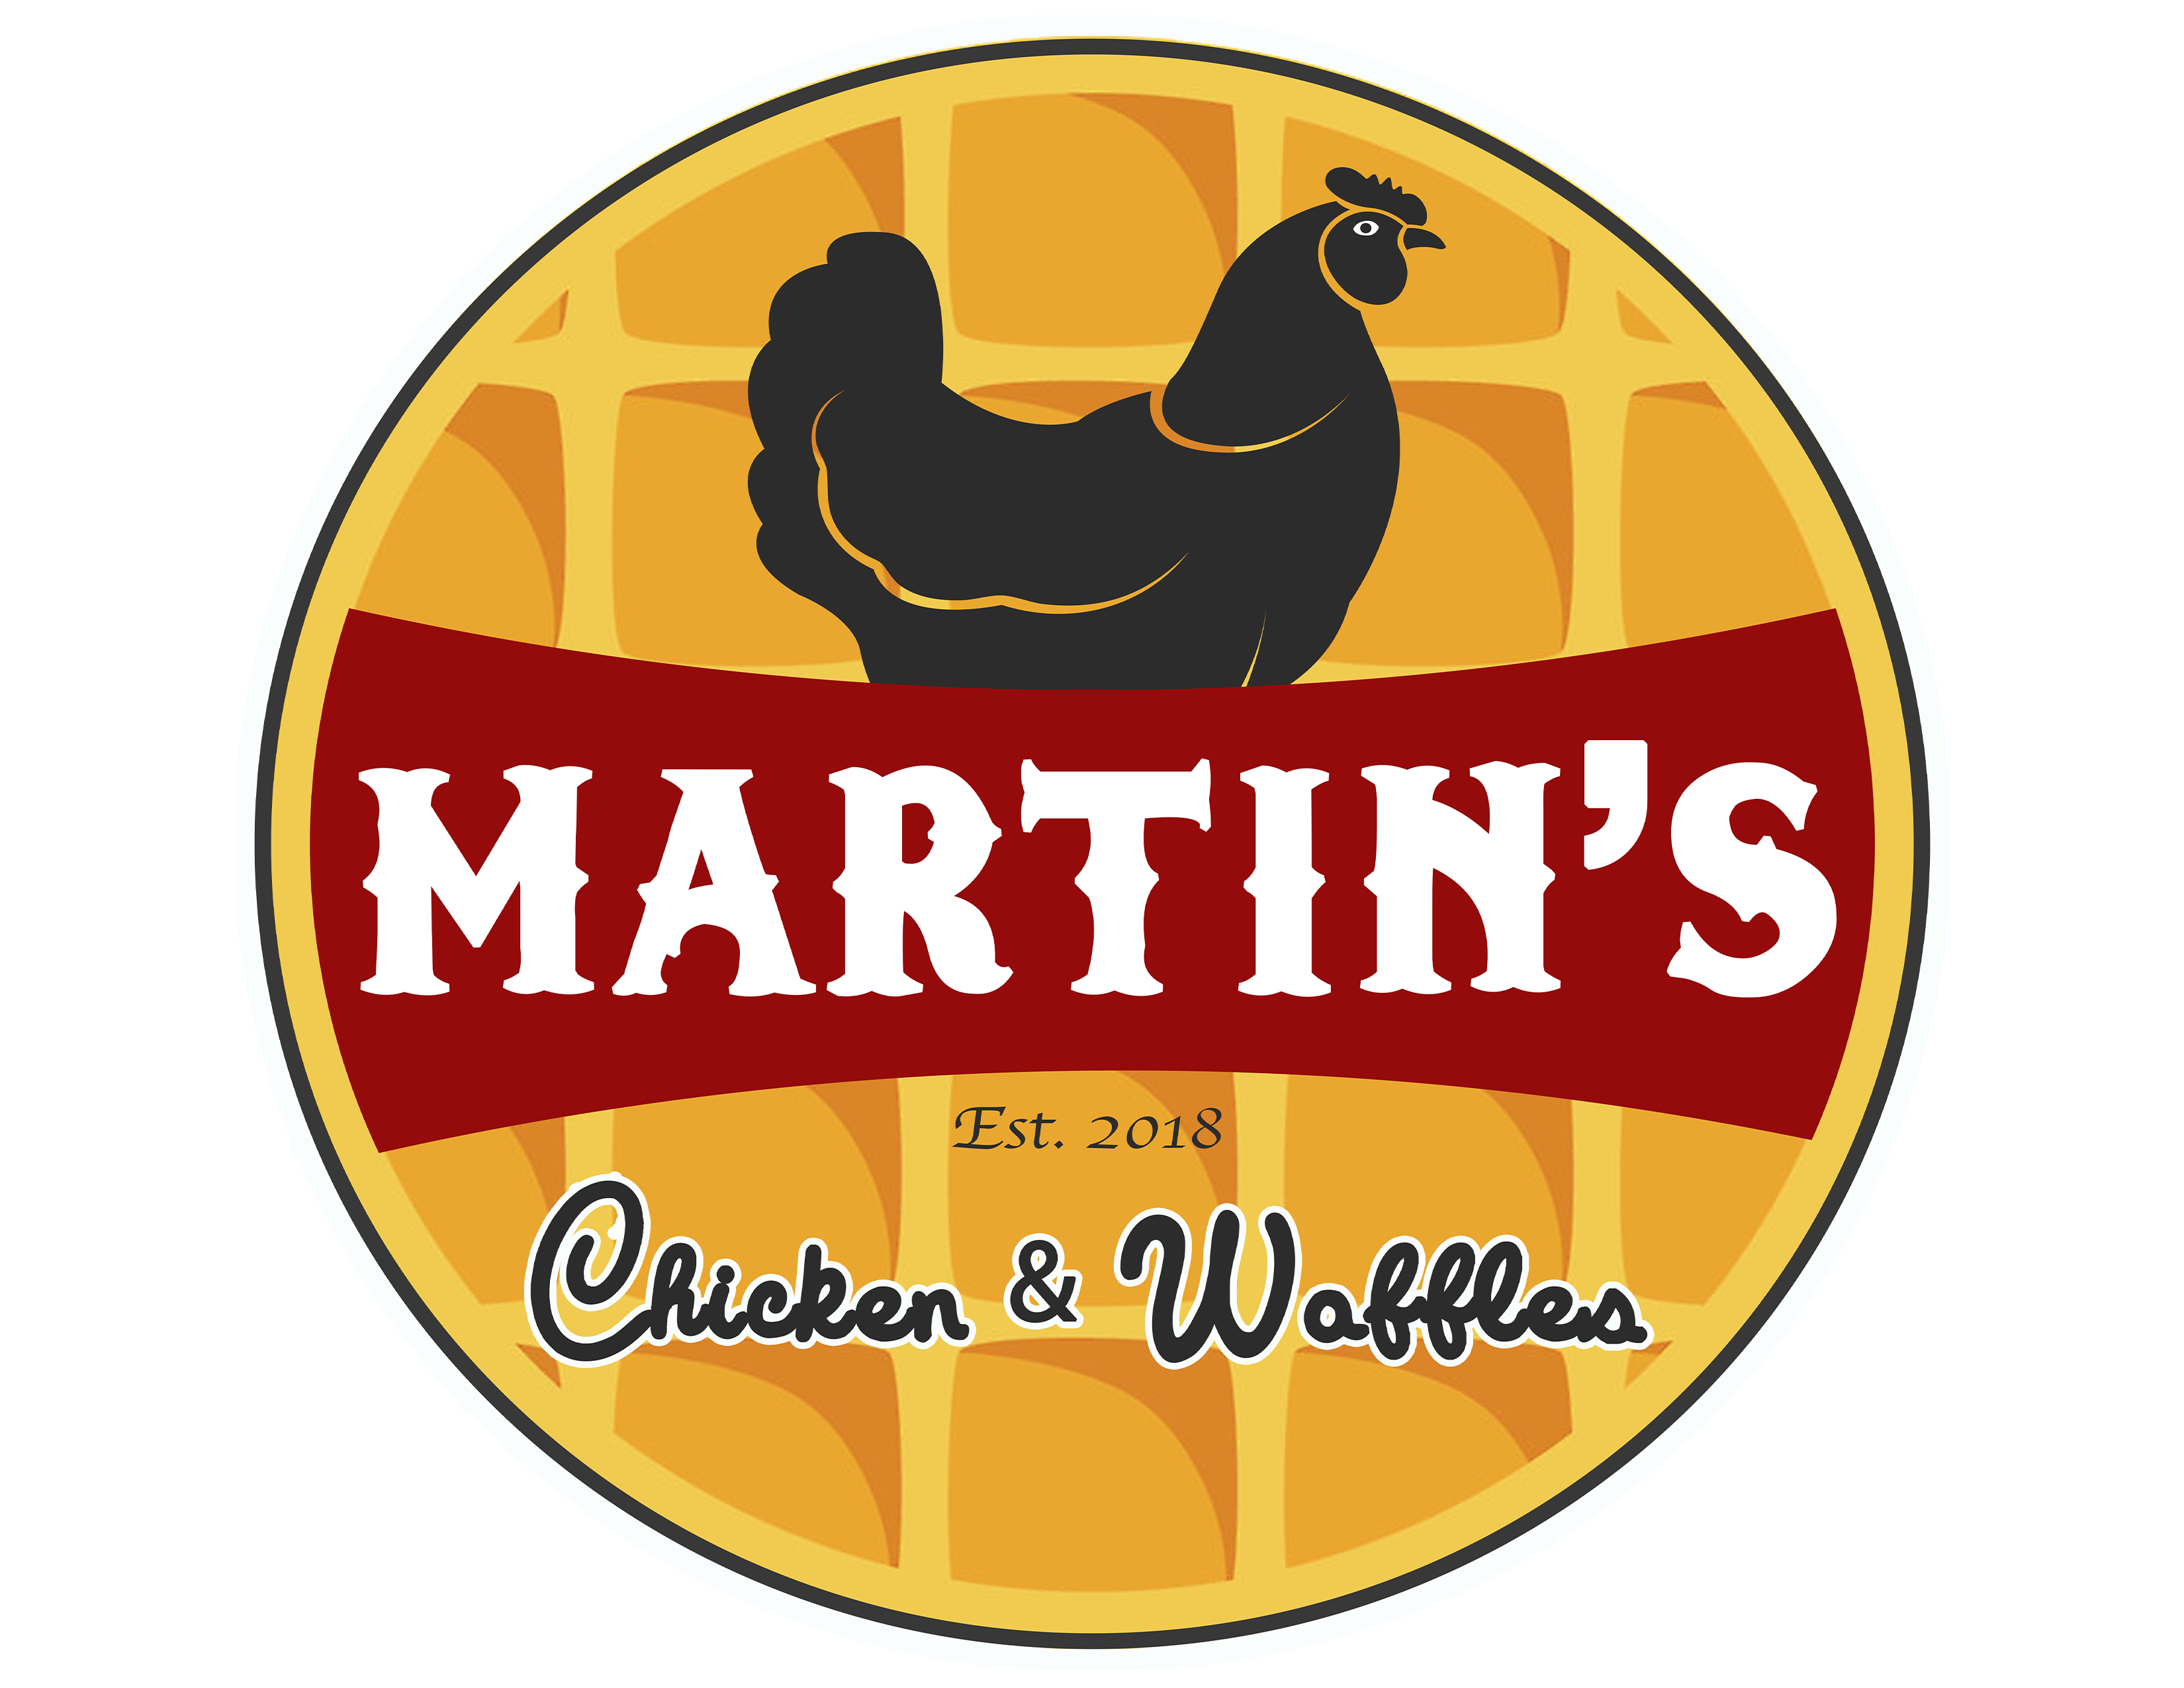 martinschickenandwaffles.com